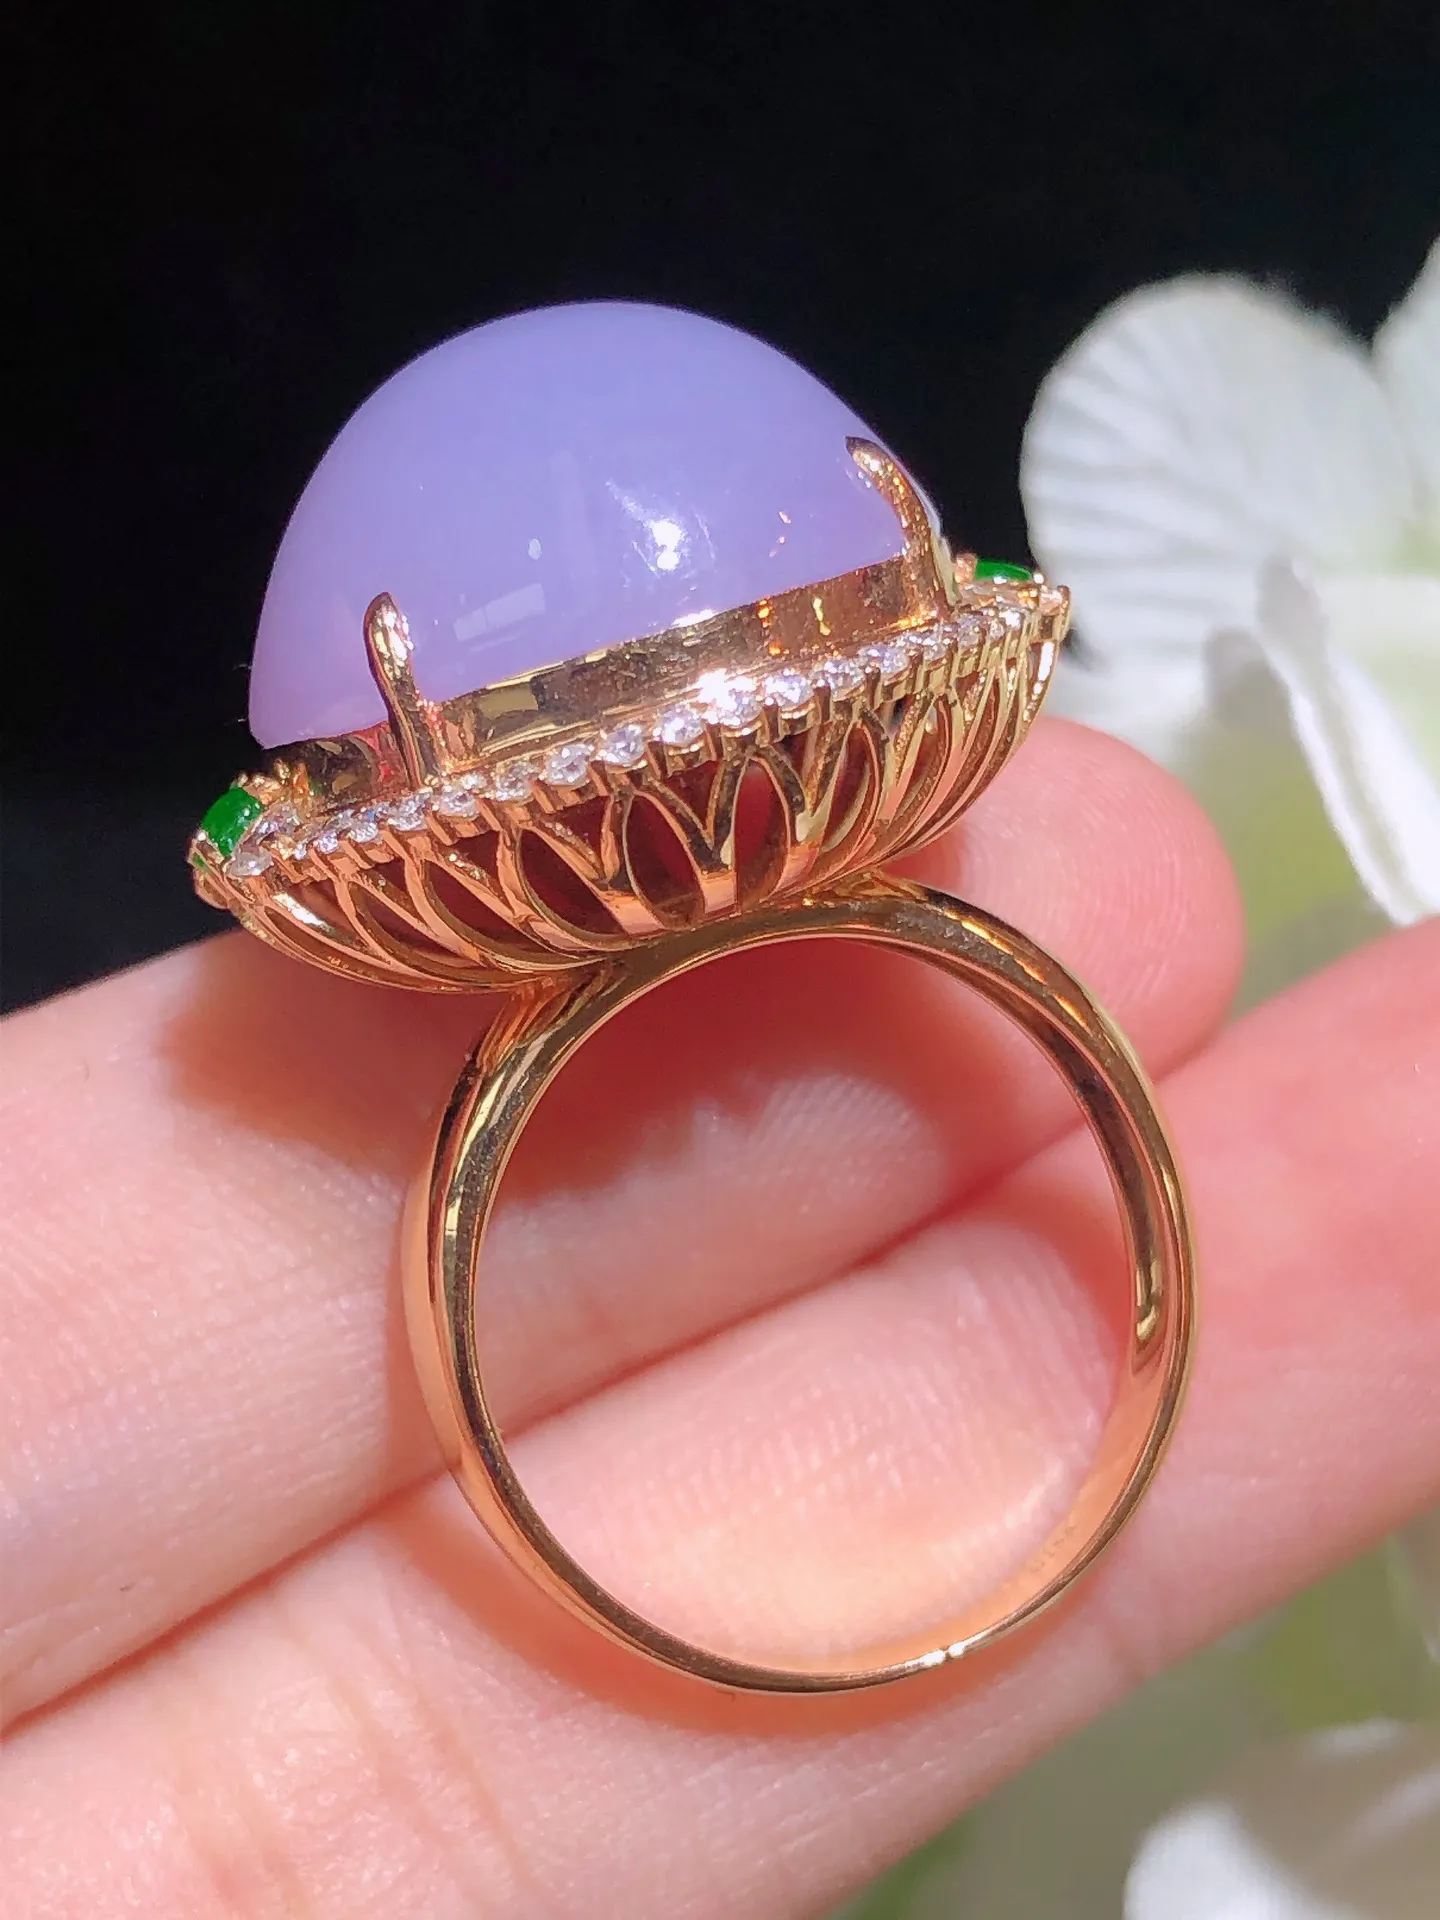 翡翠紫罗兰蛋面戒指 雕工精湛 颜色鲜艳 饱满圆润